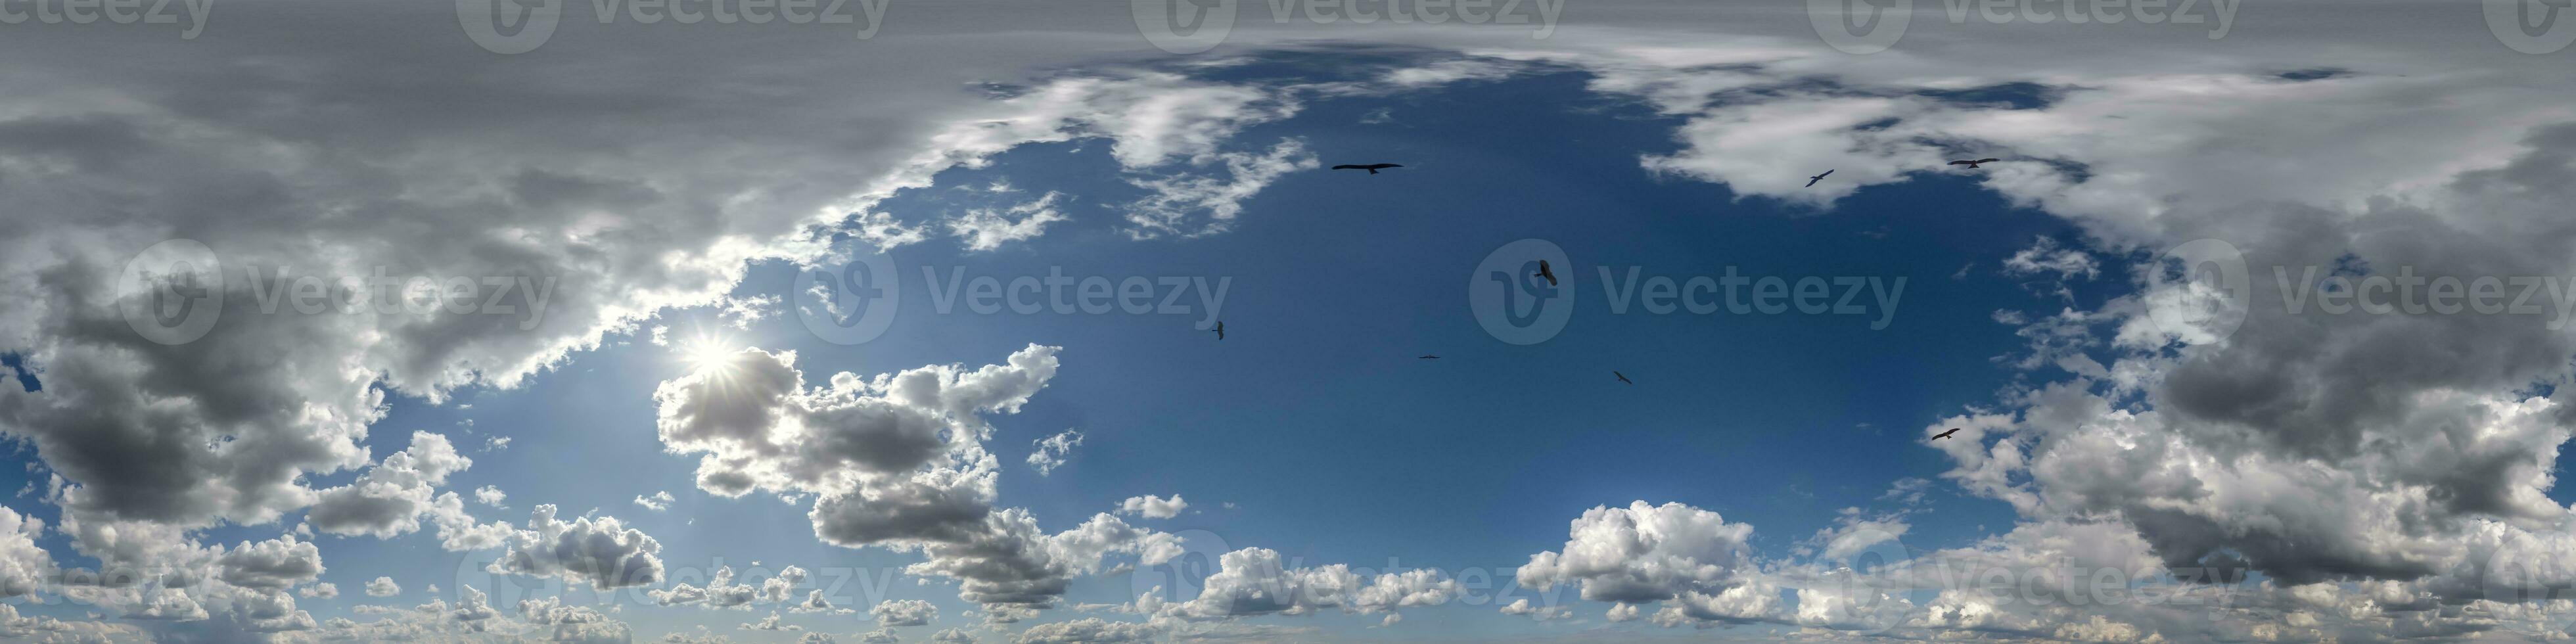 sin costura nublado azul bóveda celeste 360 hdri panorama ver con rebaño de aves en increíble nubes con cenit para utilizar en 3d gráficos o juego como cielo Hazme o editar zumbido Disparo foto